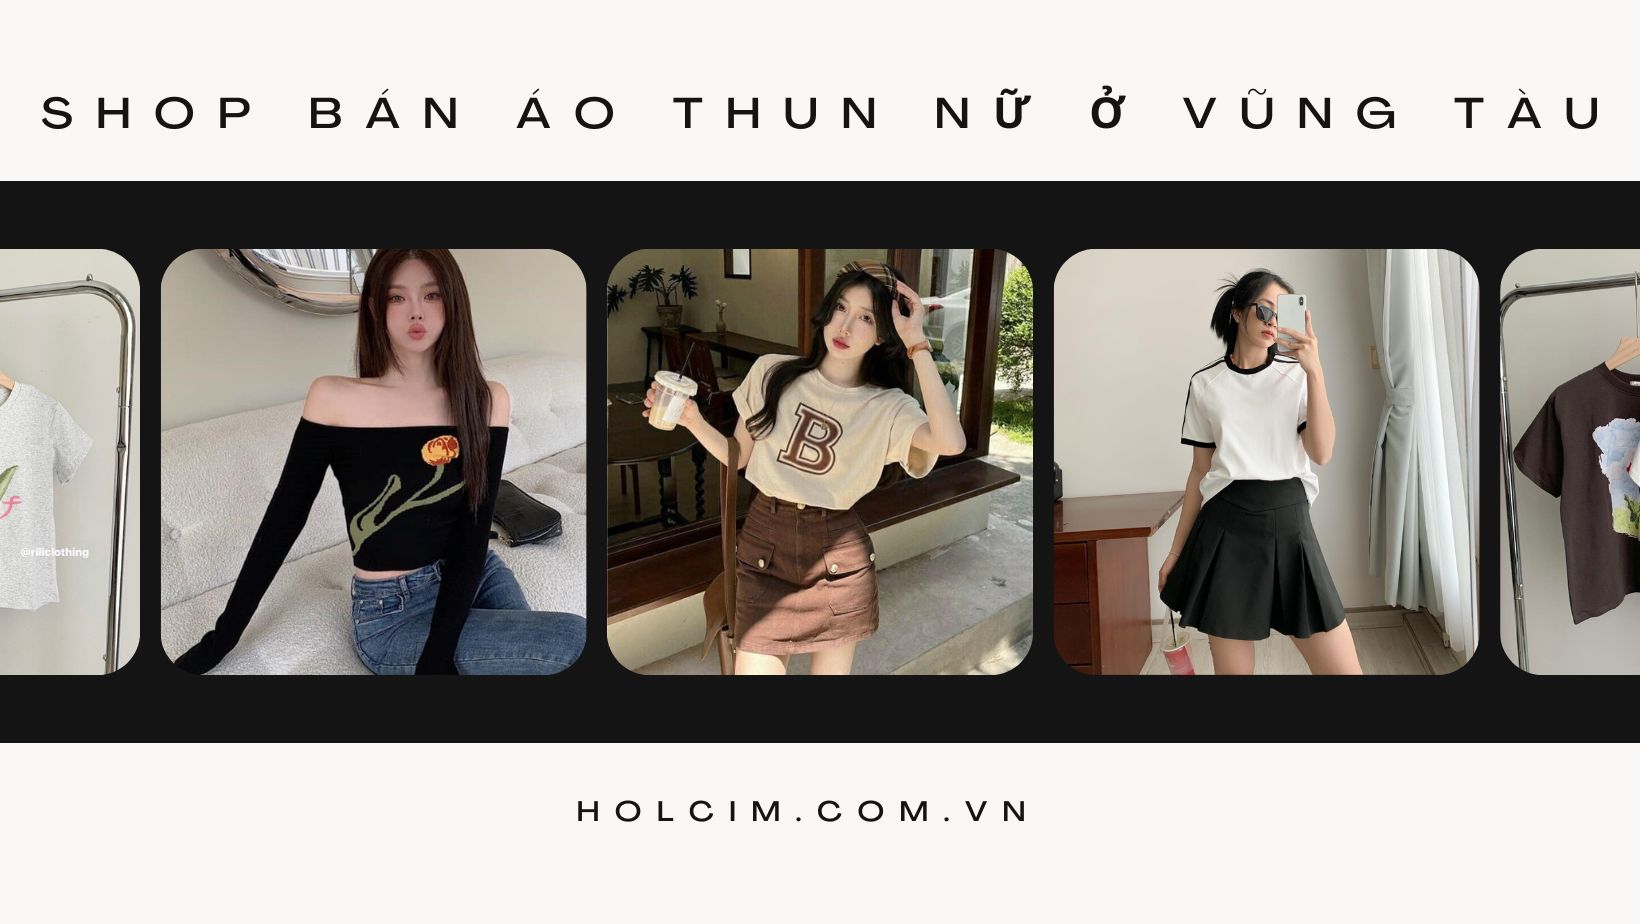 Top 7 shop bán áo thun nữ đẹp nhất ở Vũng Tàu